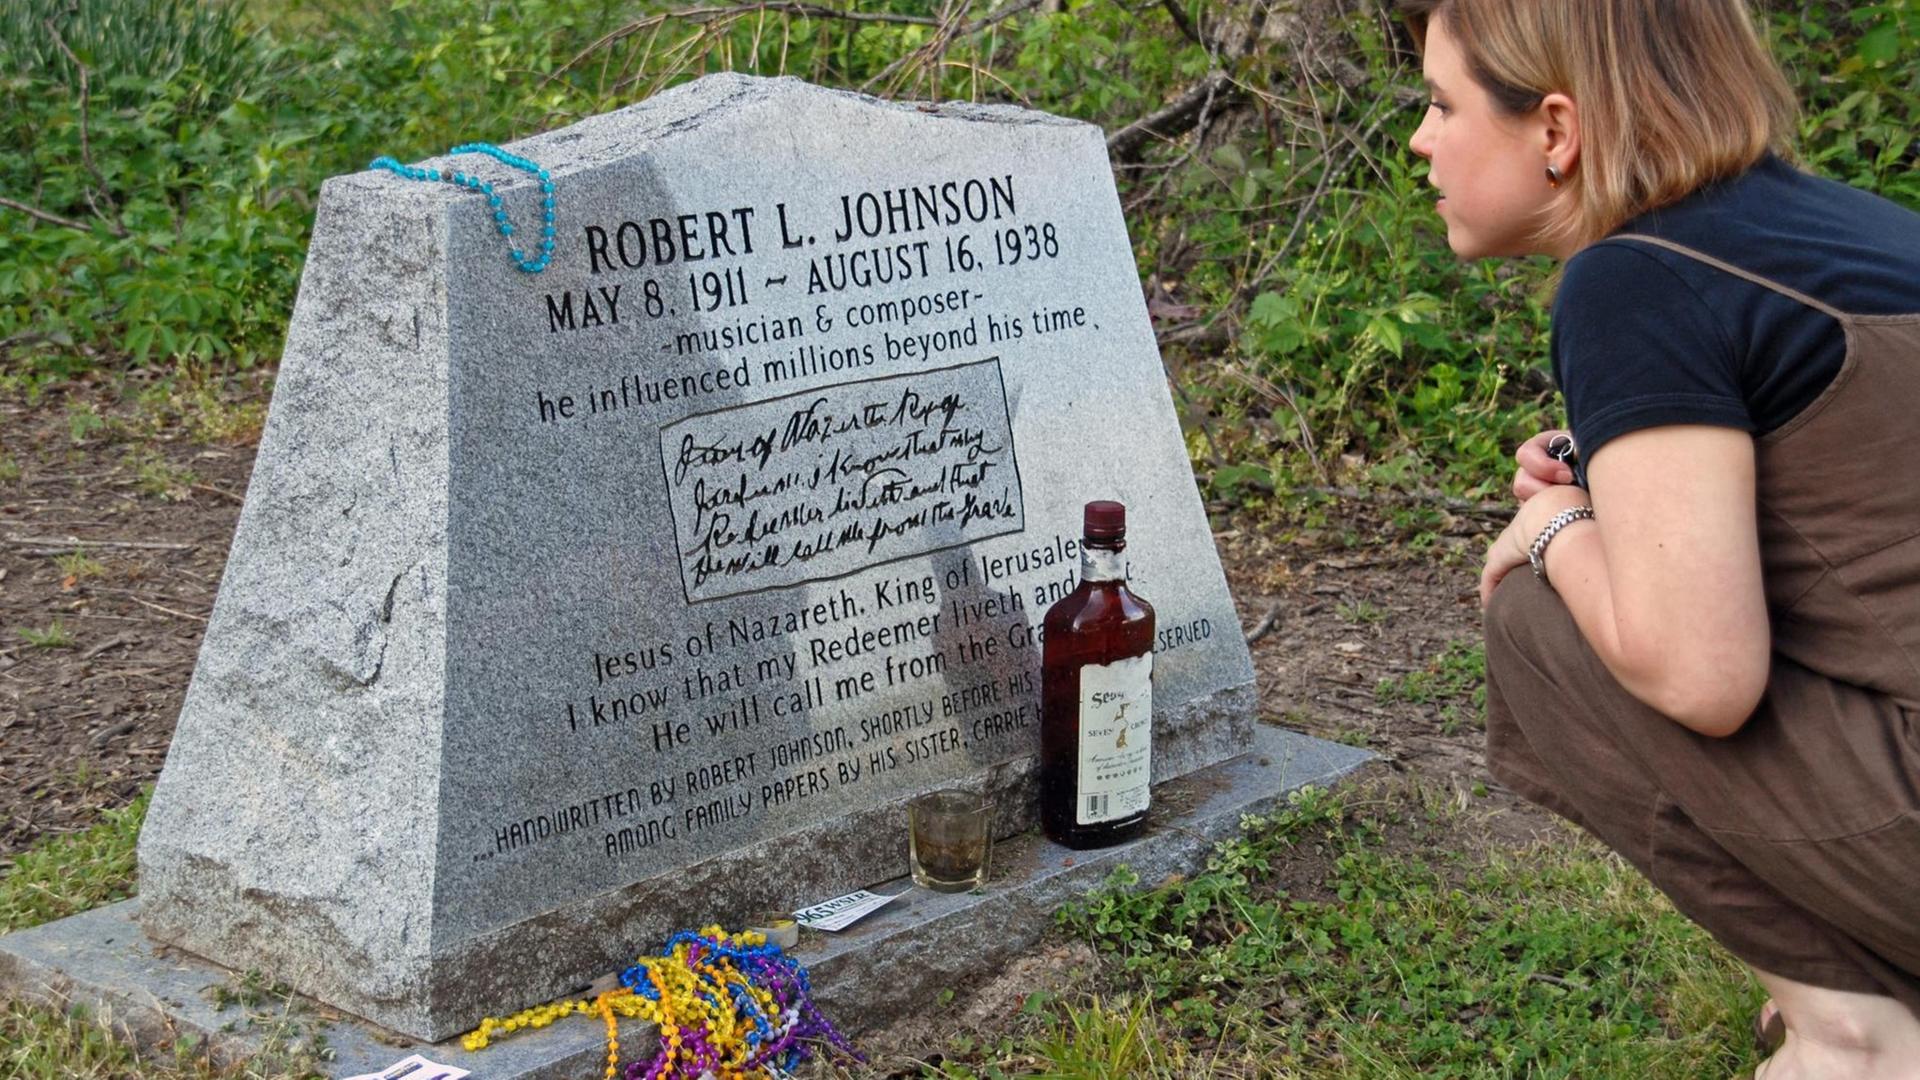 Ein Frau kniet vor dem Grabstein des Musikers Robert Johnson. Vor dem Grabstein steht eine braune Flasche und ein Glas. Daneben liegen bunte Ketten.